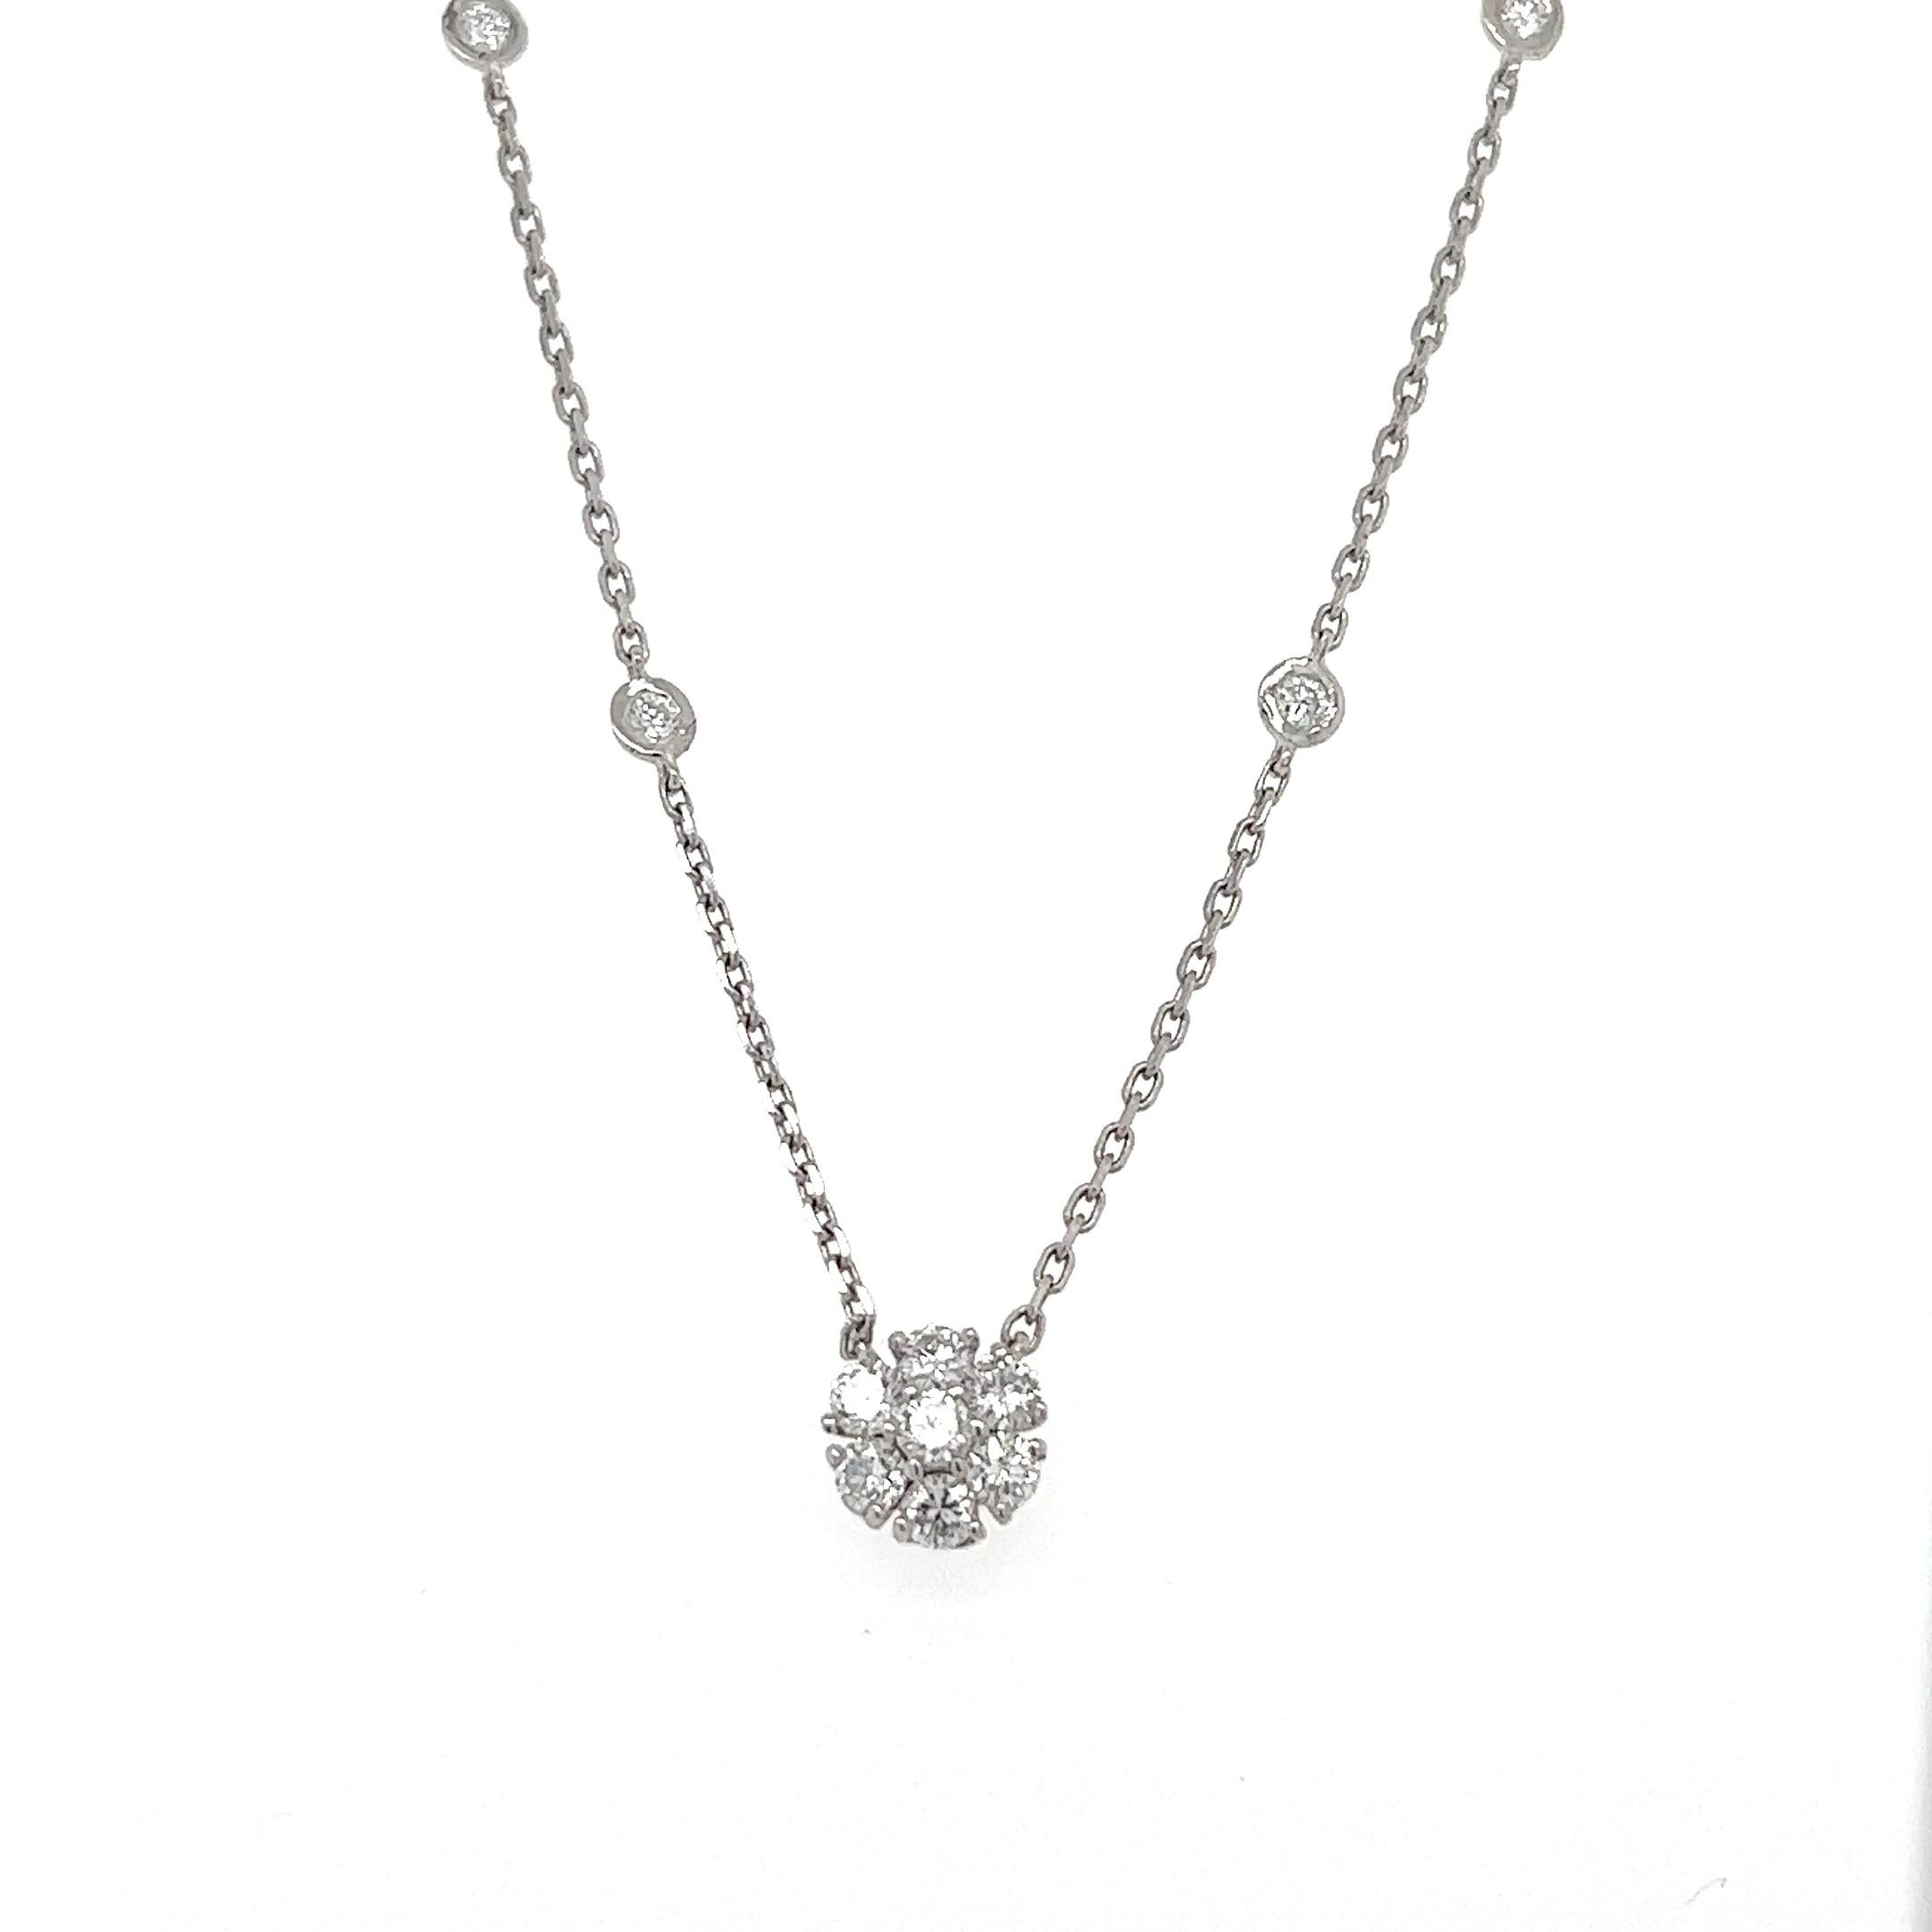 Dieses Blümchen-Diamantencollier hat natürliche Diamanten im Rundschliff mit einem Gewicht von 0,86 Karat. Die Reinheit und Farbe der Halskette sind VS-F.

Das ungefähre Gewicht dieser Halskette beträgt 2.7 Gramm. 

Die Halskette ist 16 Zoll lang